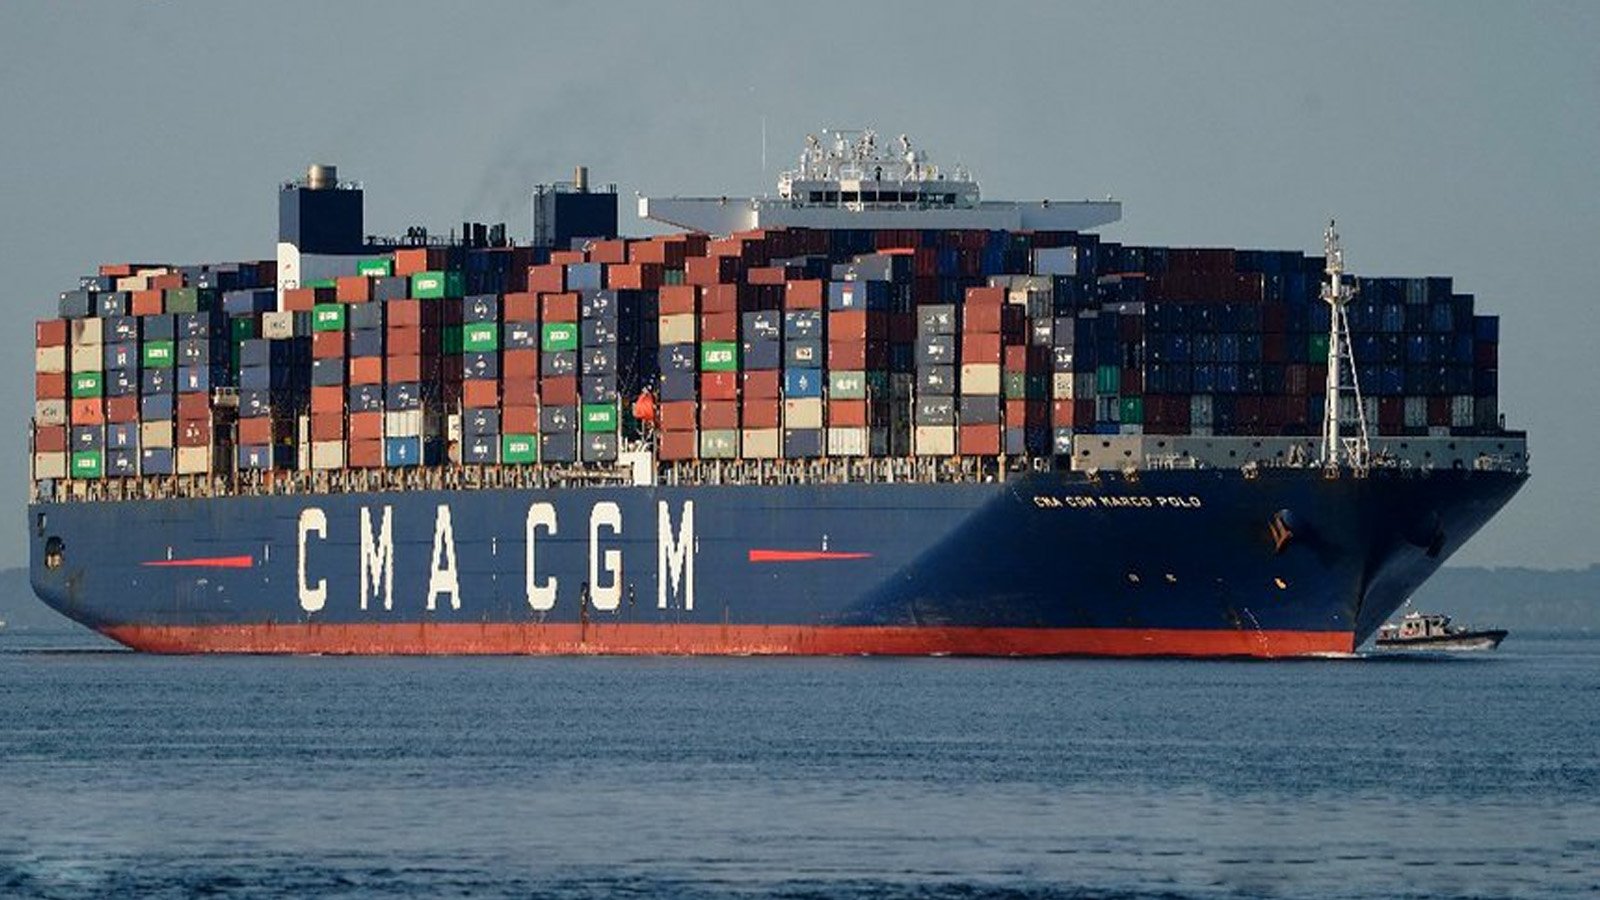 قالت مجموعة شحن الحاويات الفرنسية CMA CGM يوم الثلاثاء إنها علّقت عبور سفن الحاويات التابعة لها في البحر الأحمر، على خطى المنافسين الأوروبيين Maersk وMSC اللتين أعلنتا عن إجراءات مماثلة